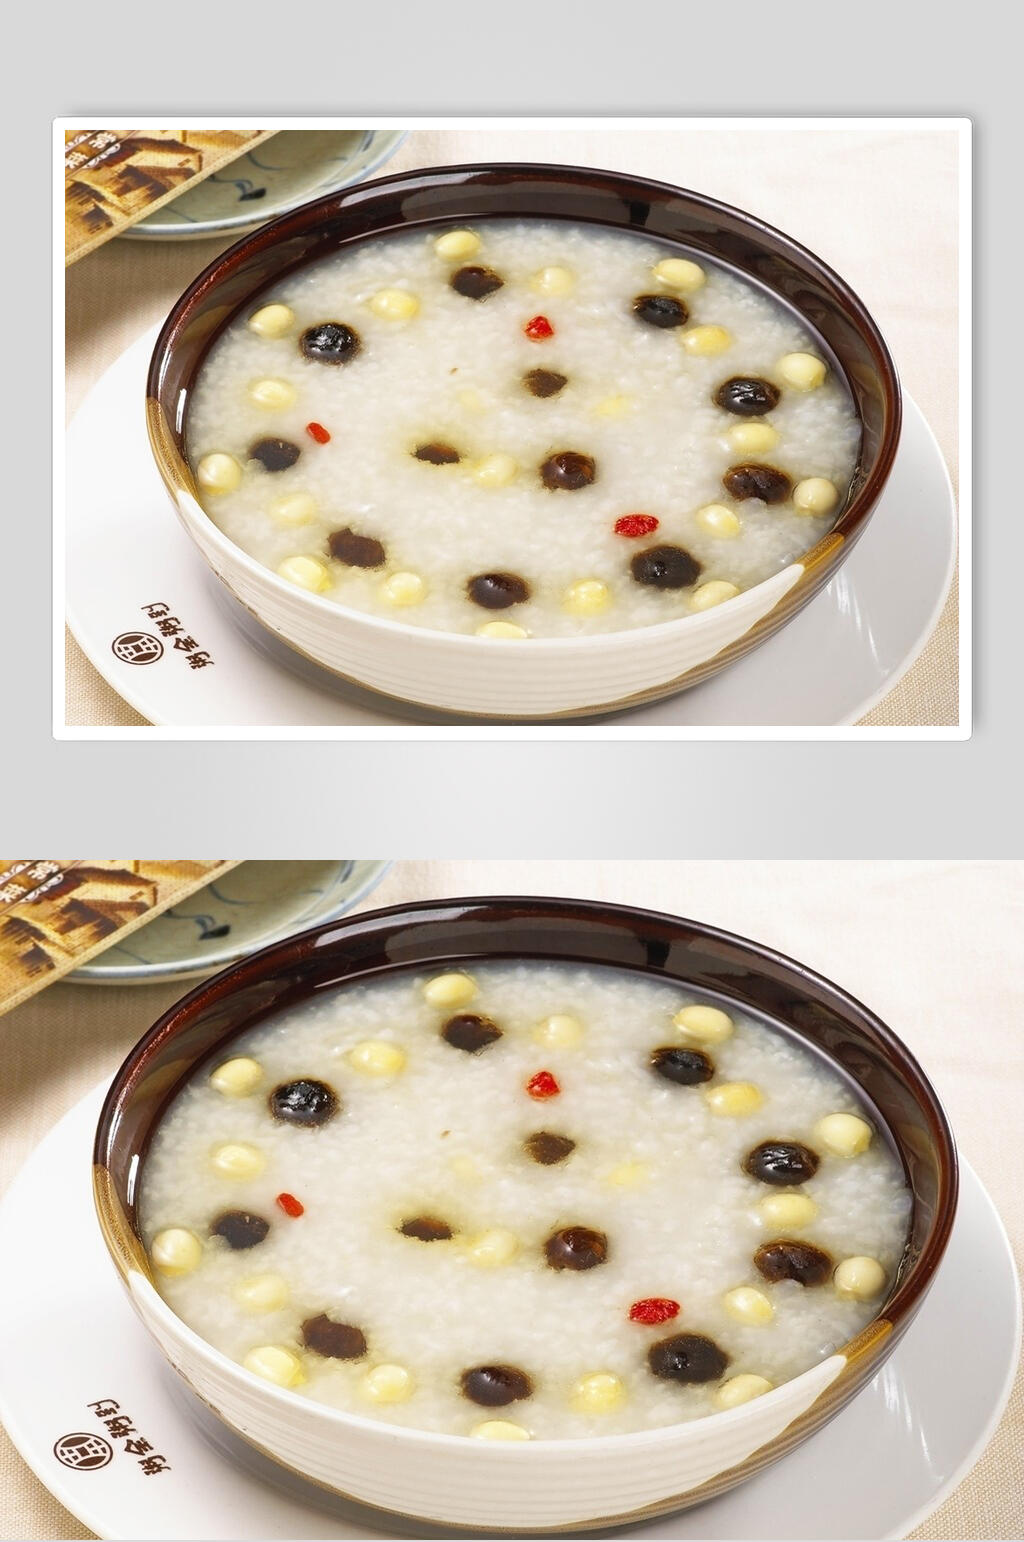 桂圆莲子粥食品摄影图片素材